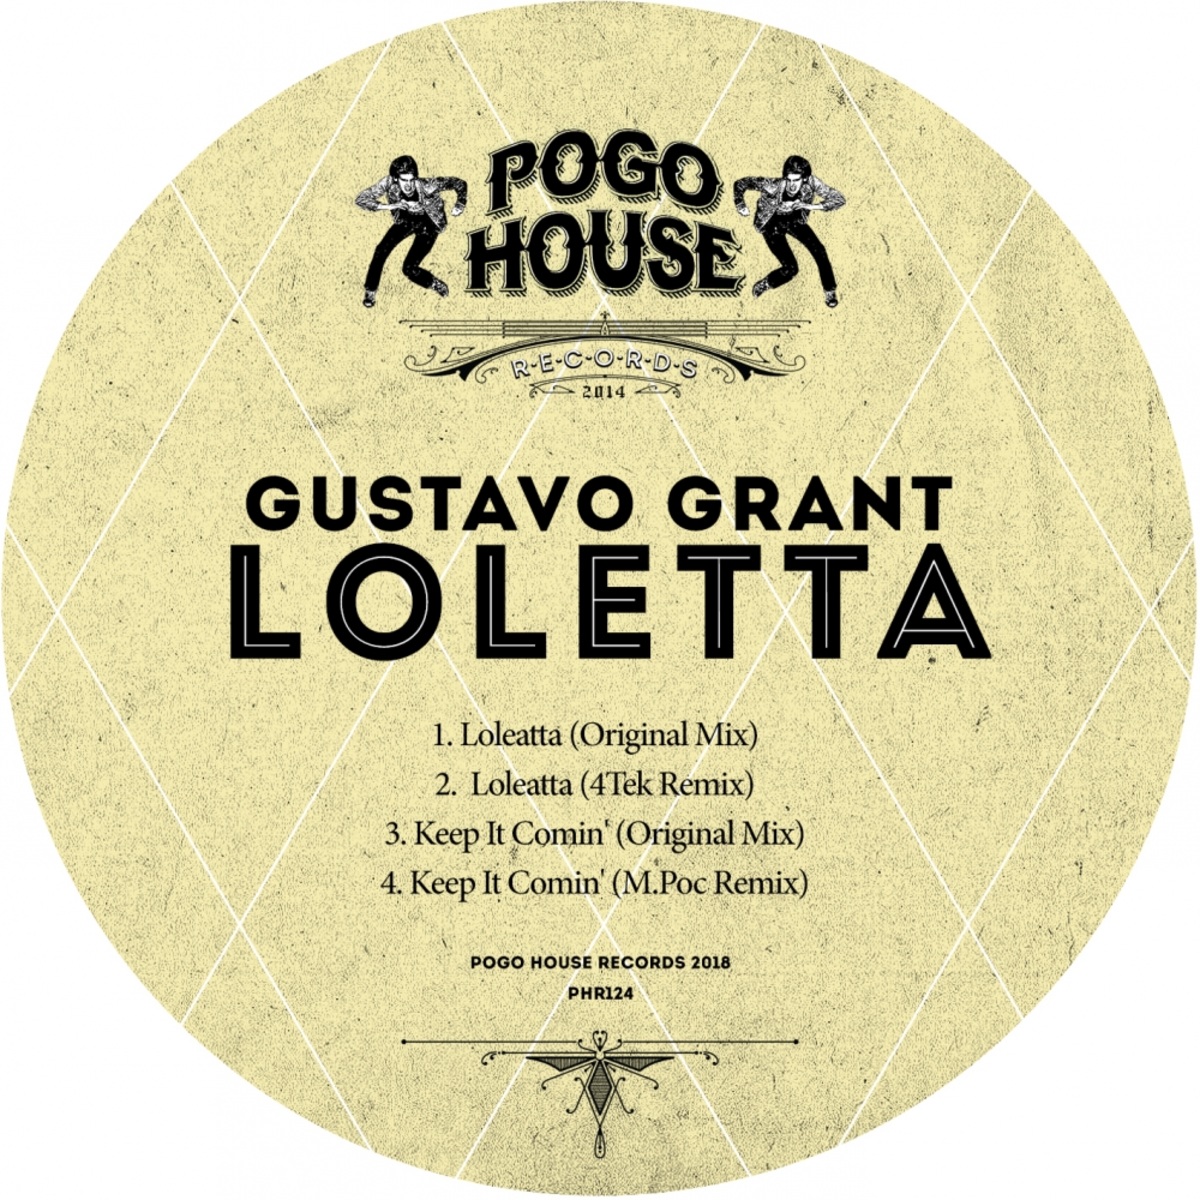 Gustavo Grant - Loletta / Pogo House Records